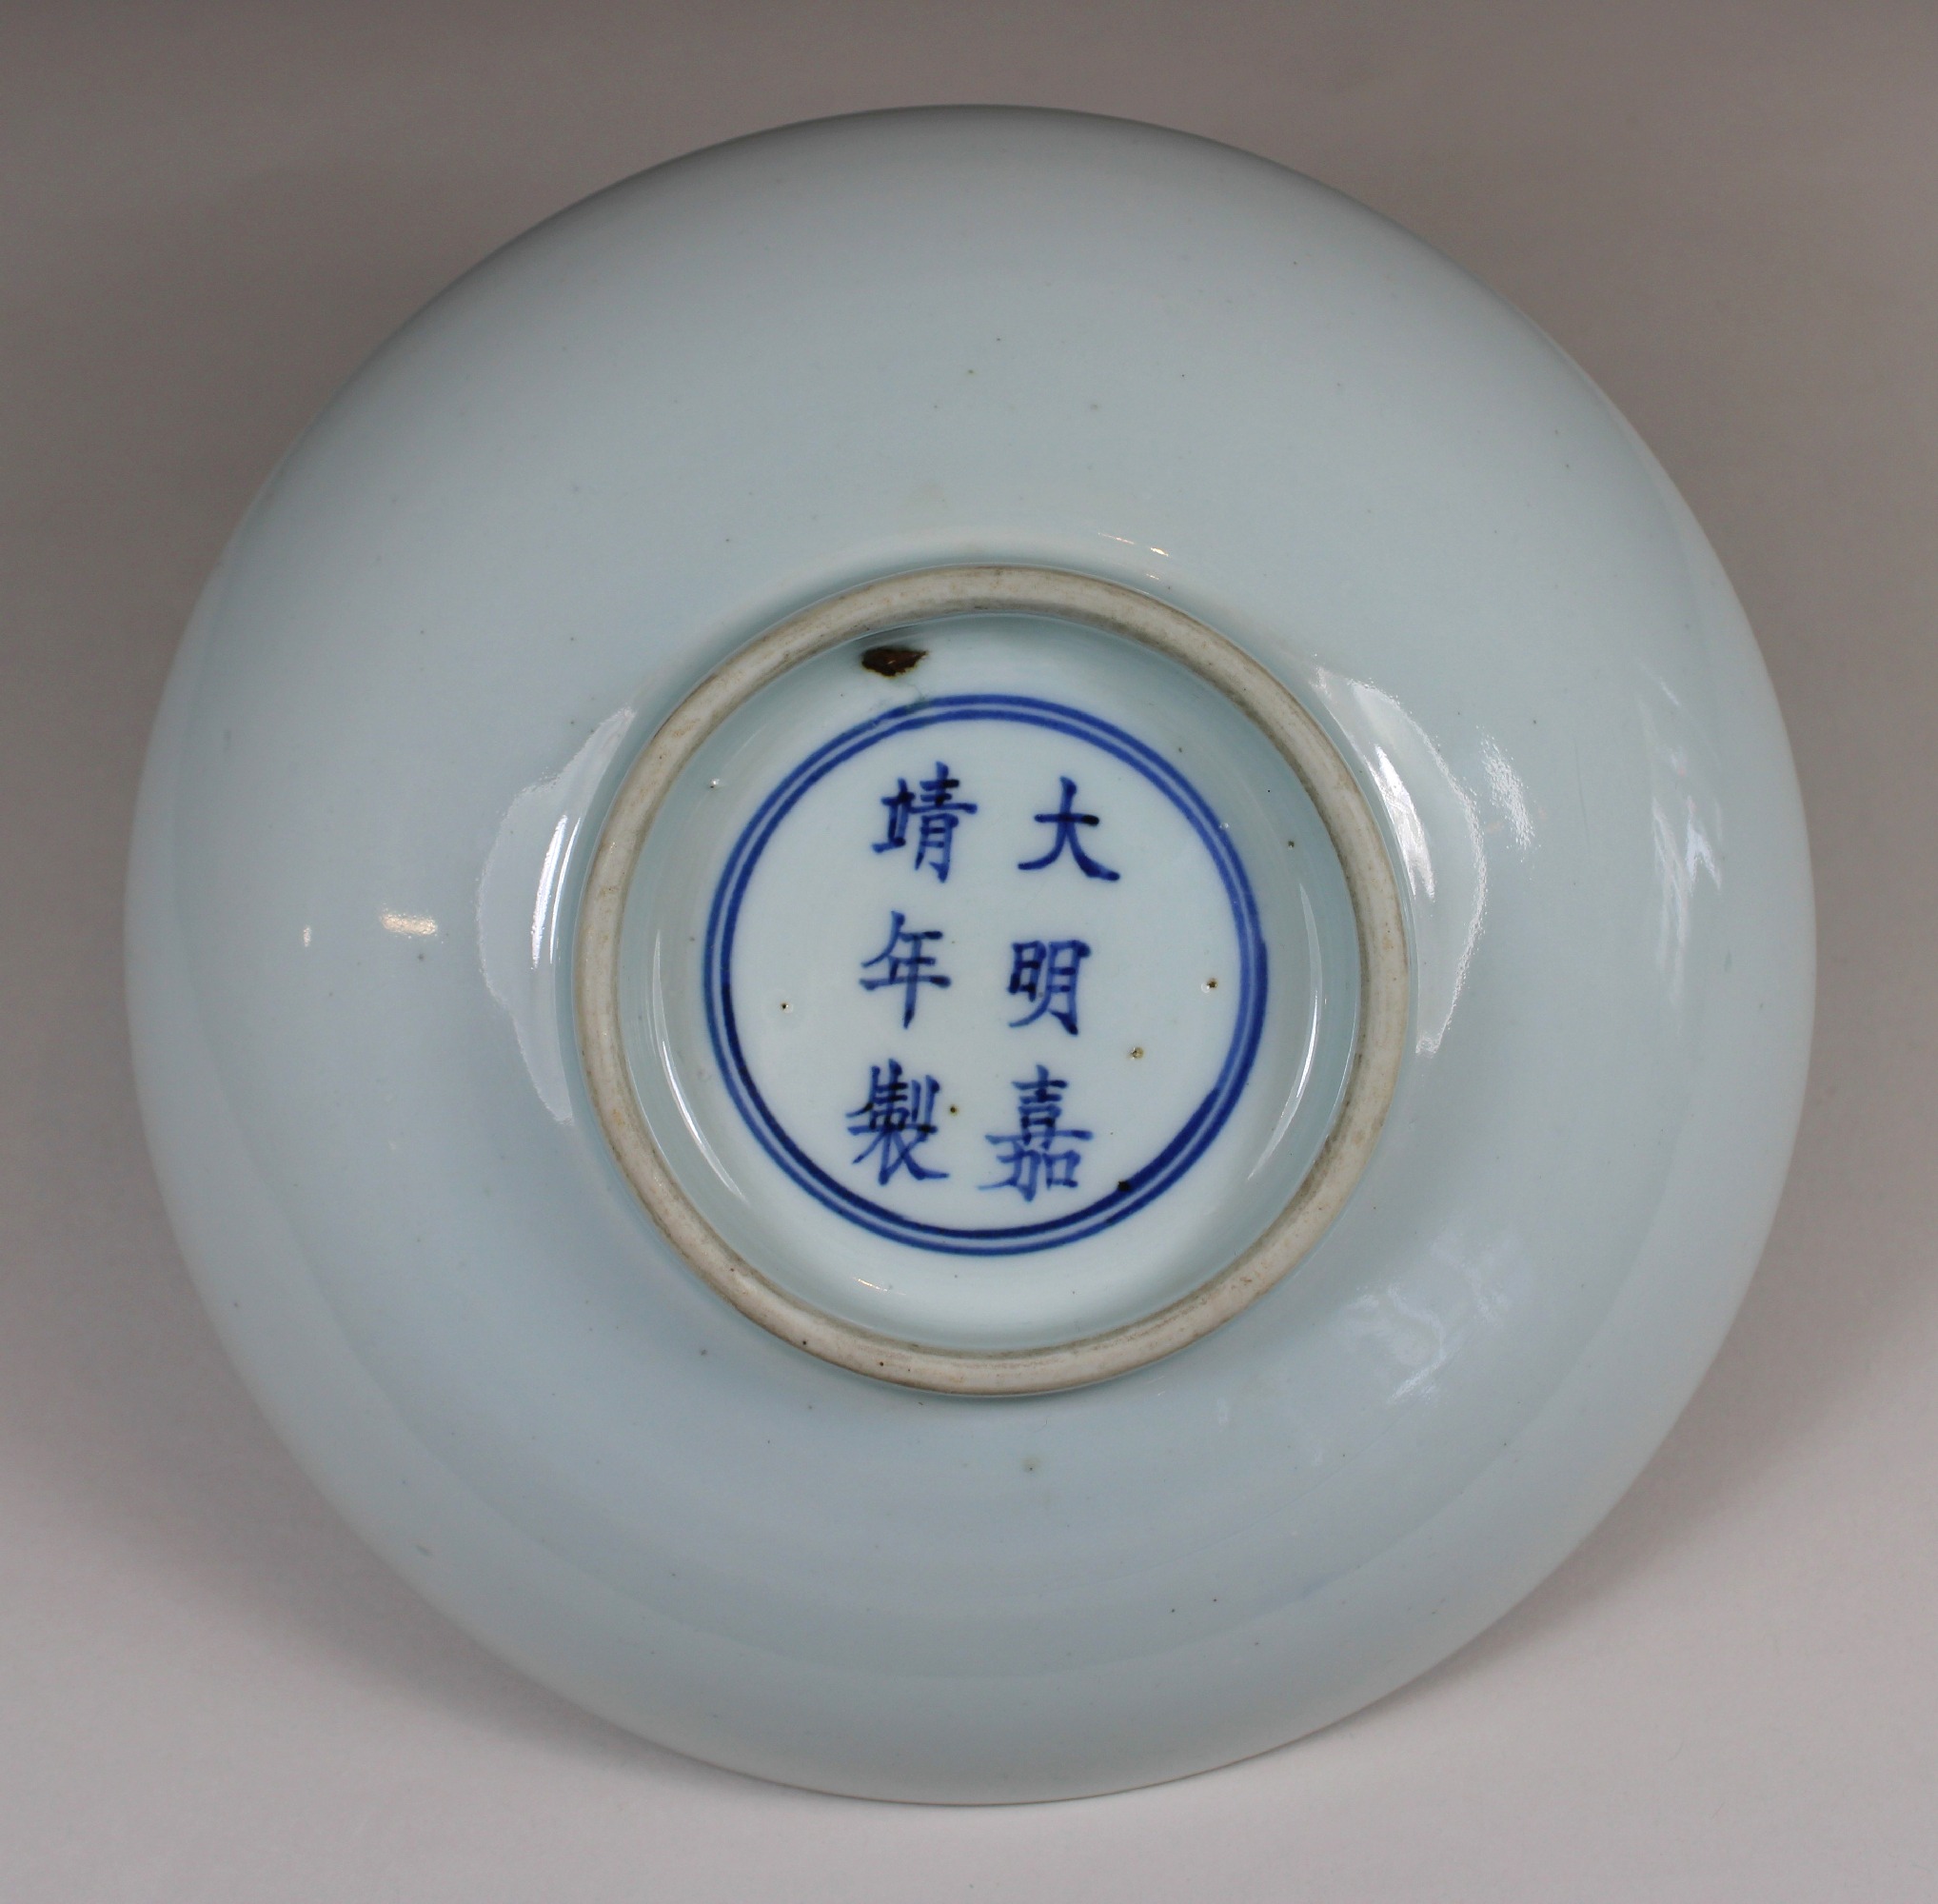 Teller, China, Porzellan, 19 Jh., blauer Doppelring mit Sechszeichen-Siegelmarke am Boden, blau- - Image 2 of 2